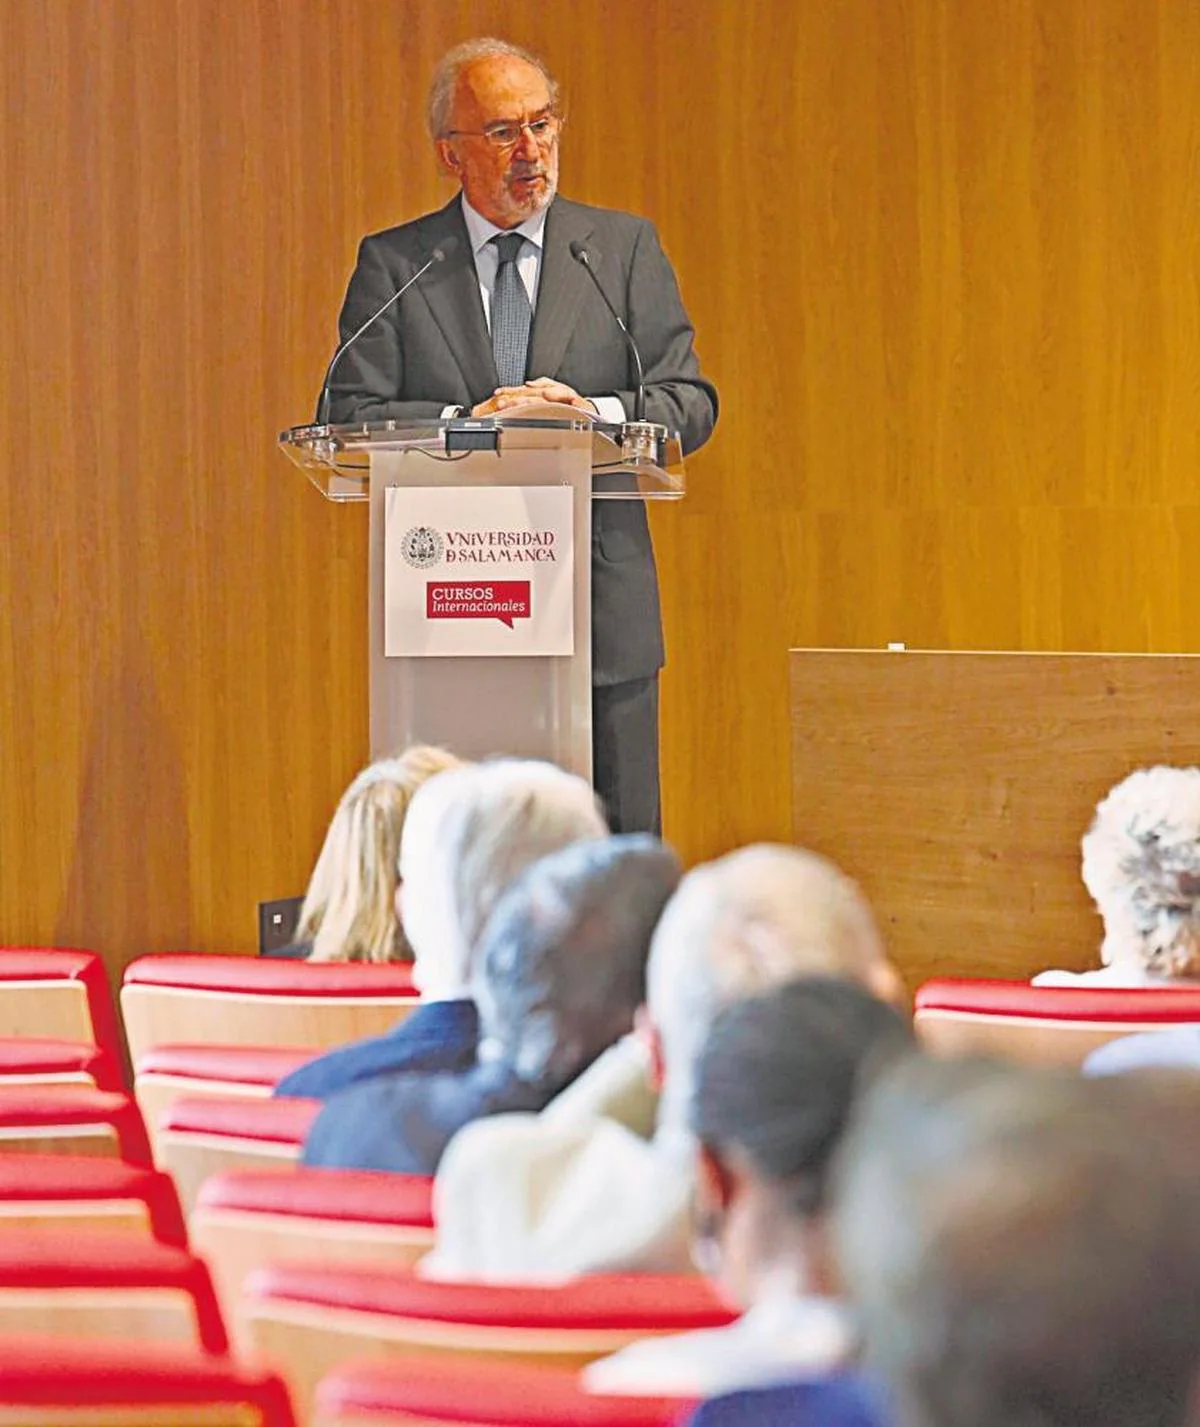 Santiago Muñoz Machado, el pasado julio, en la inauguración de la nueva sede de Cursos Internacionales